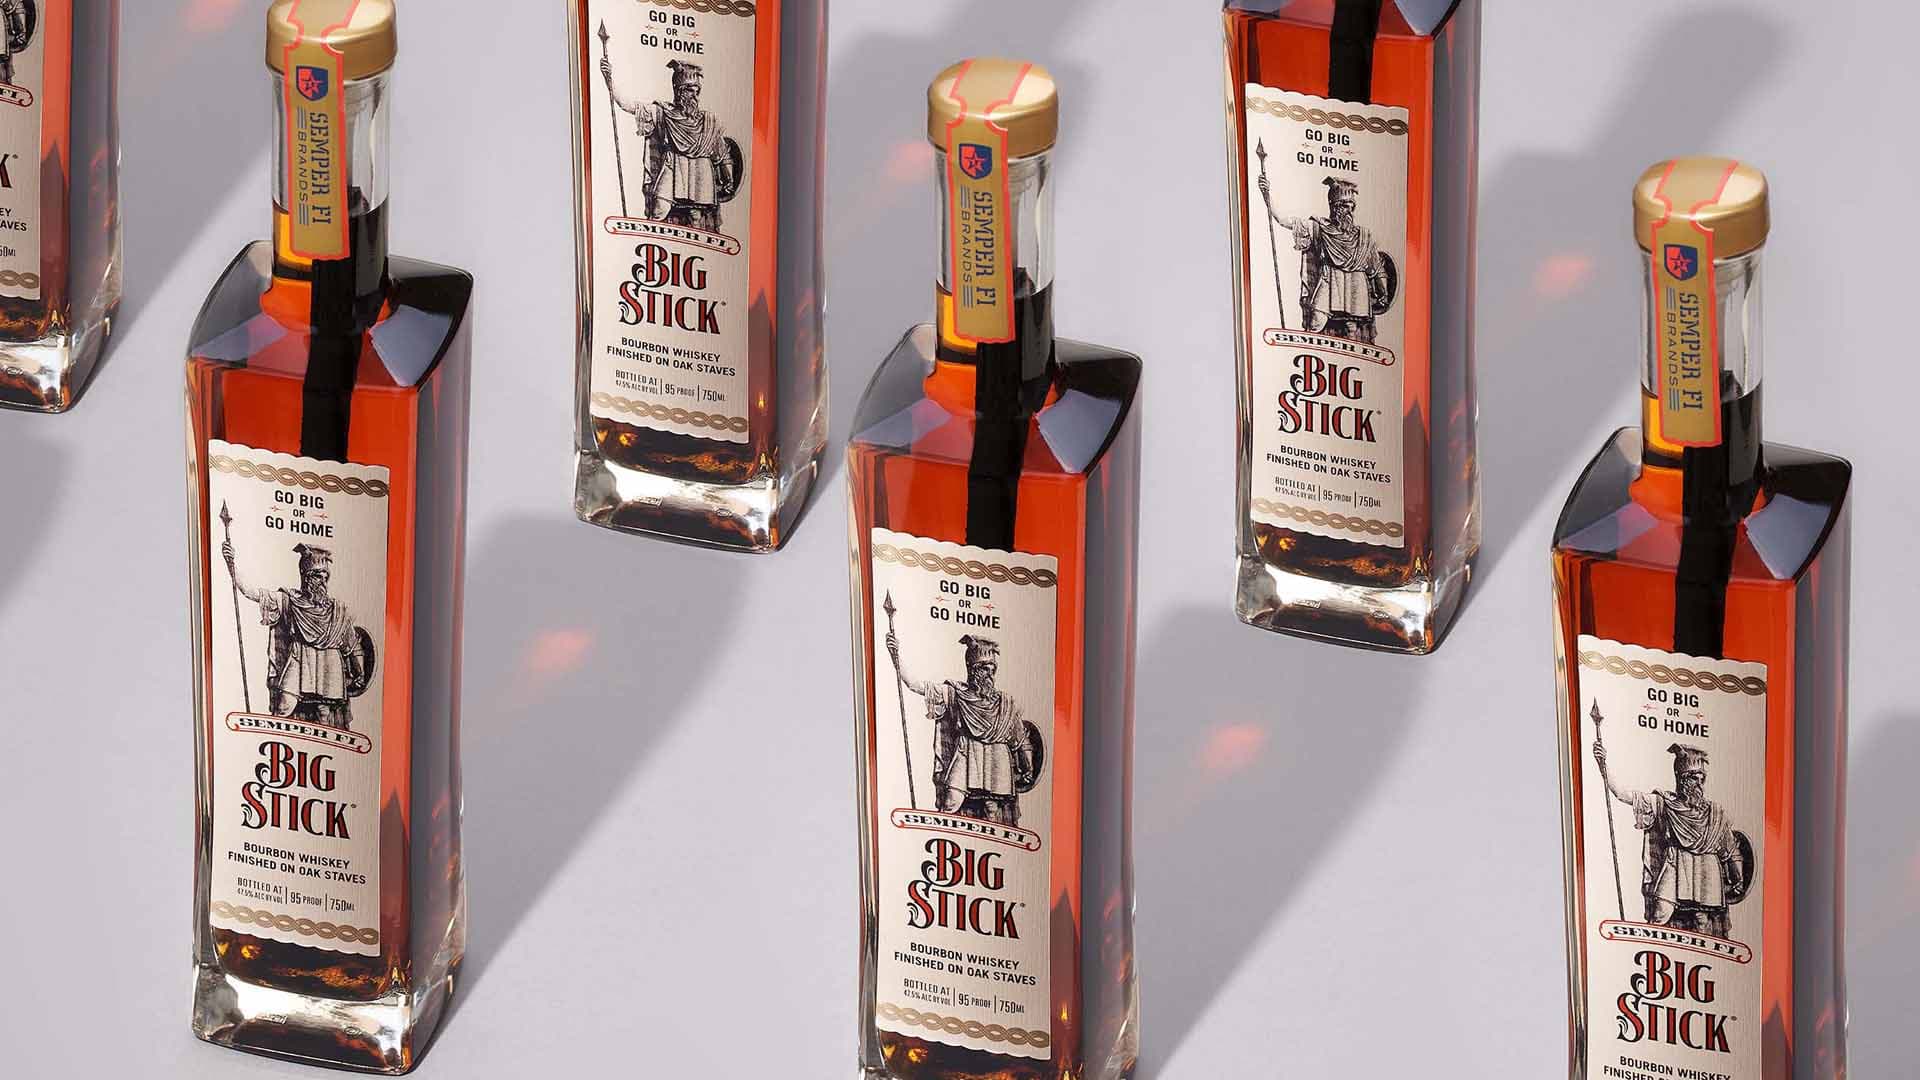 A number of Big Stick branded bourbon bottles